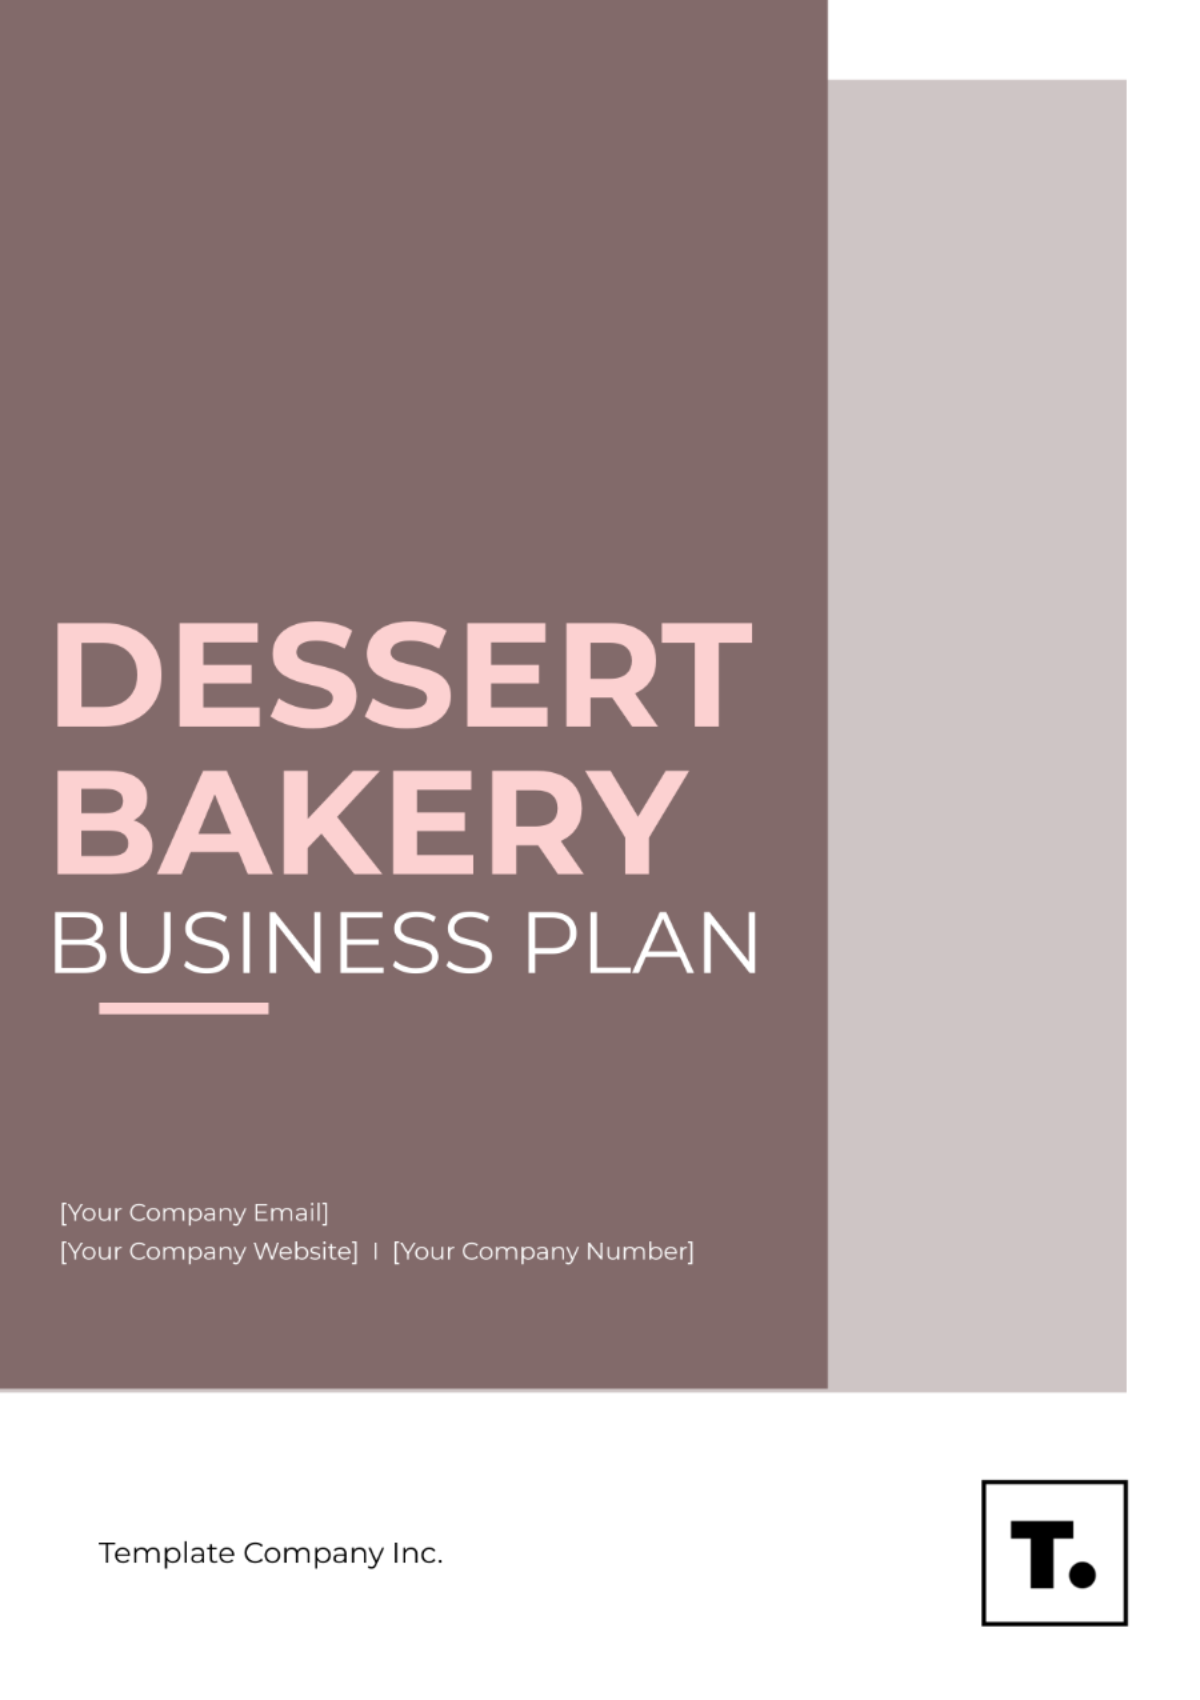 Dessert Bakery Business Plan Template